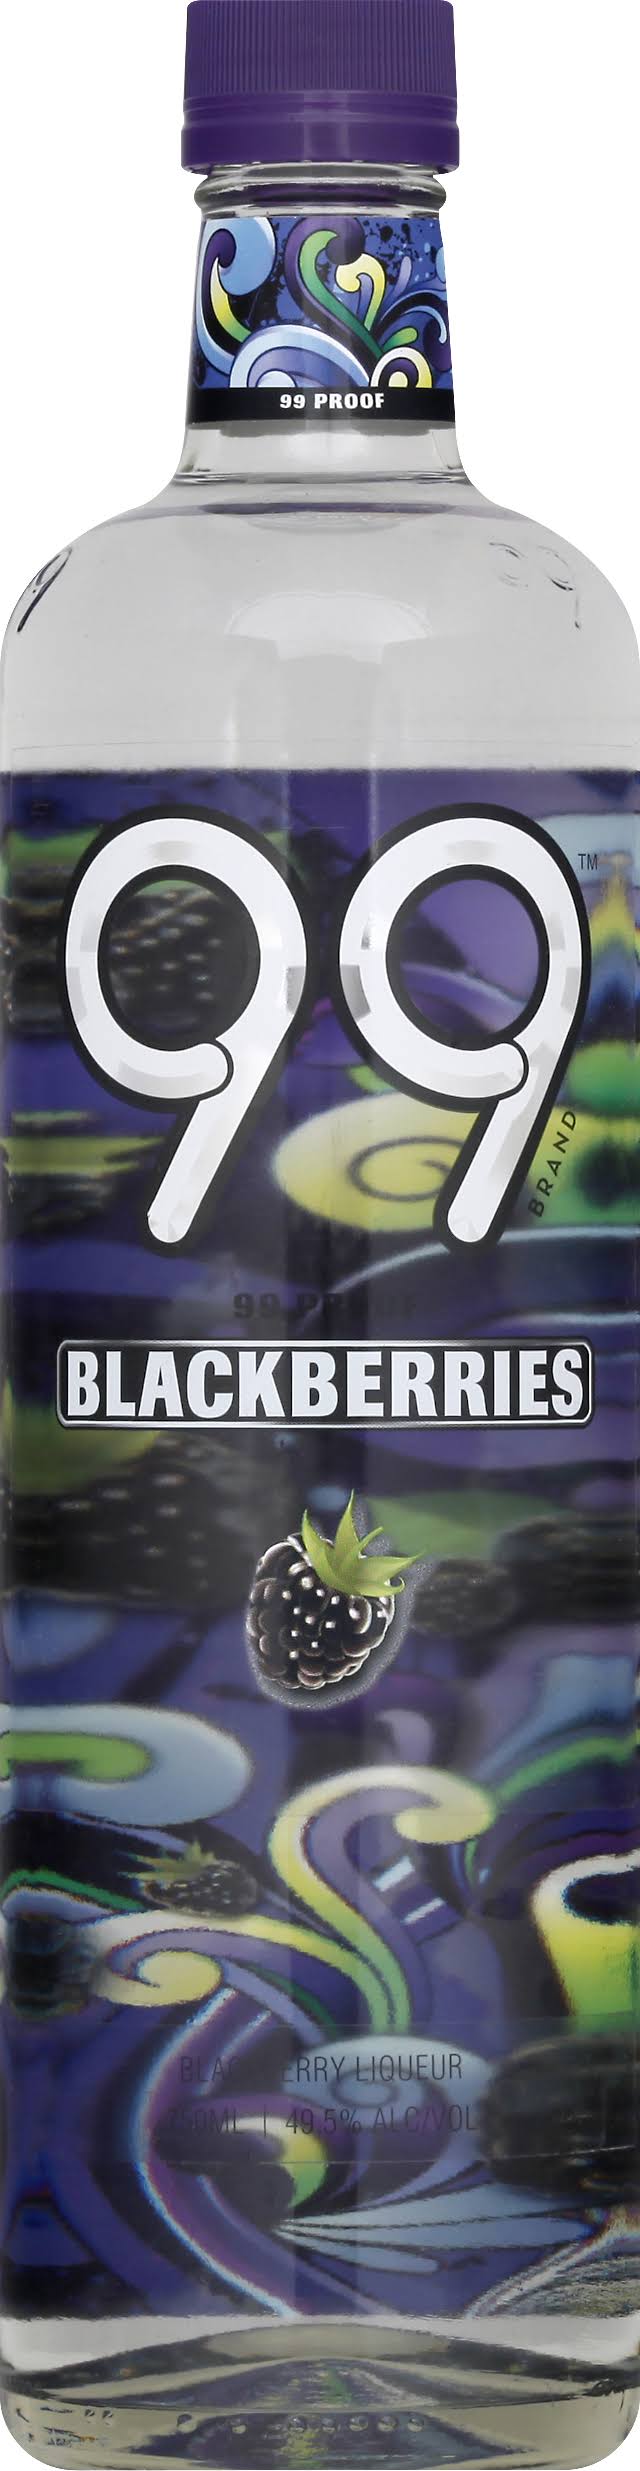 99 Berries Schnapps - 750ml